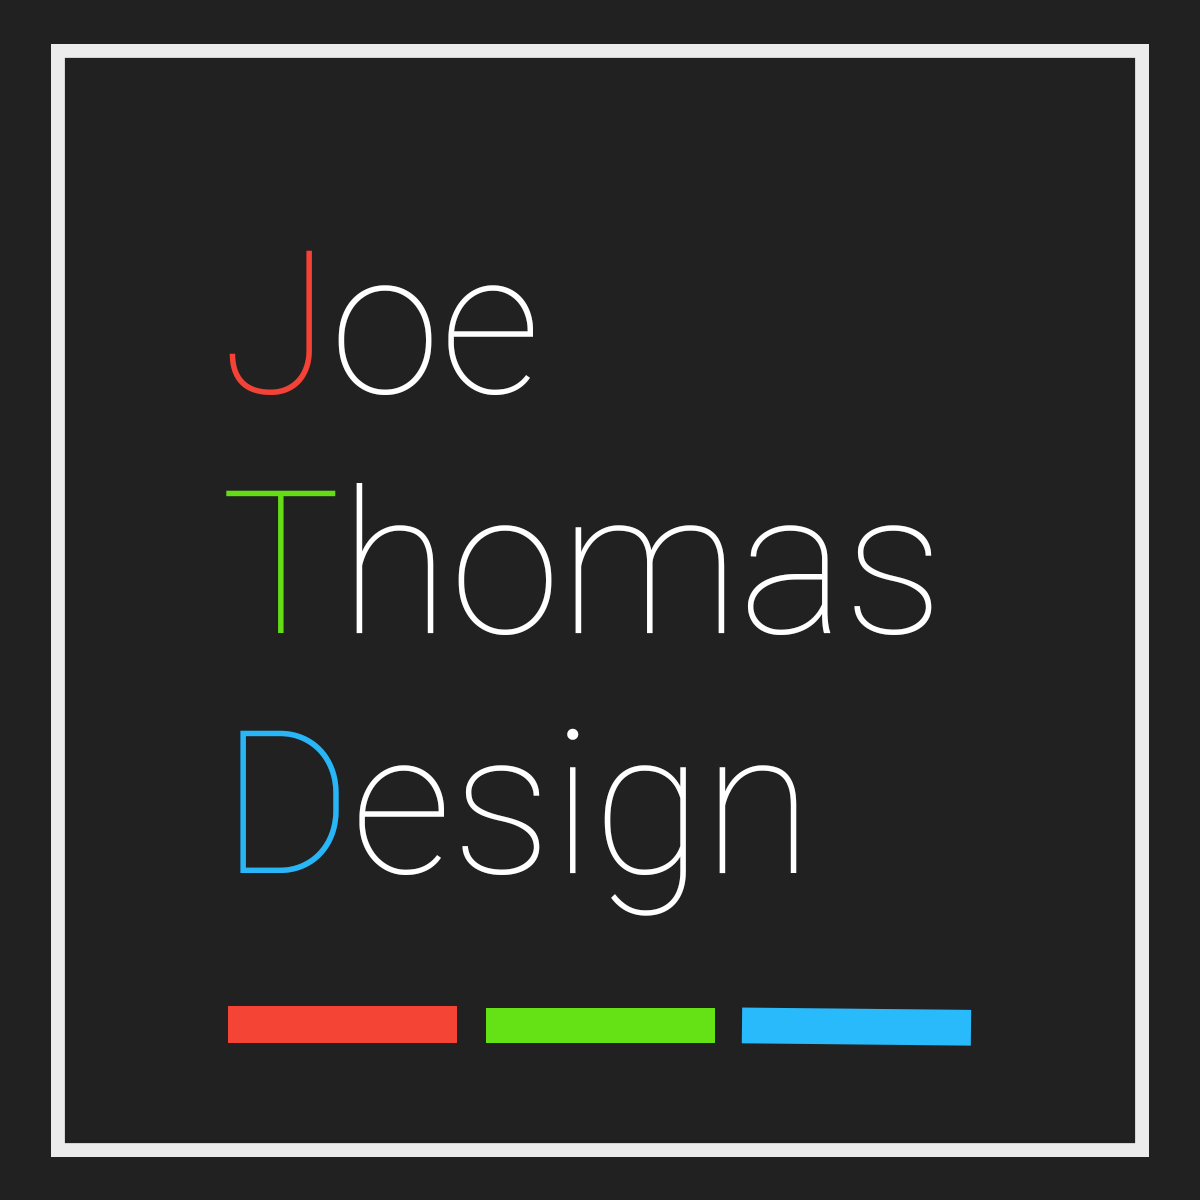 Joe Thomas Design